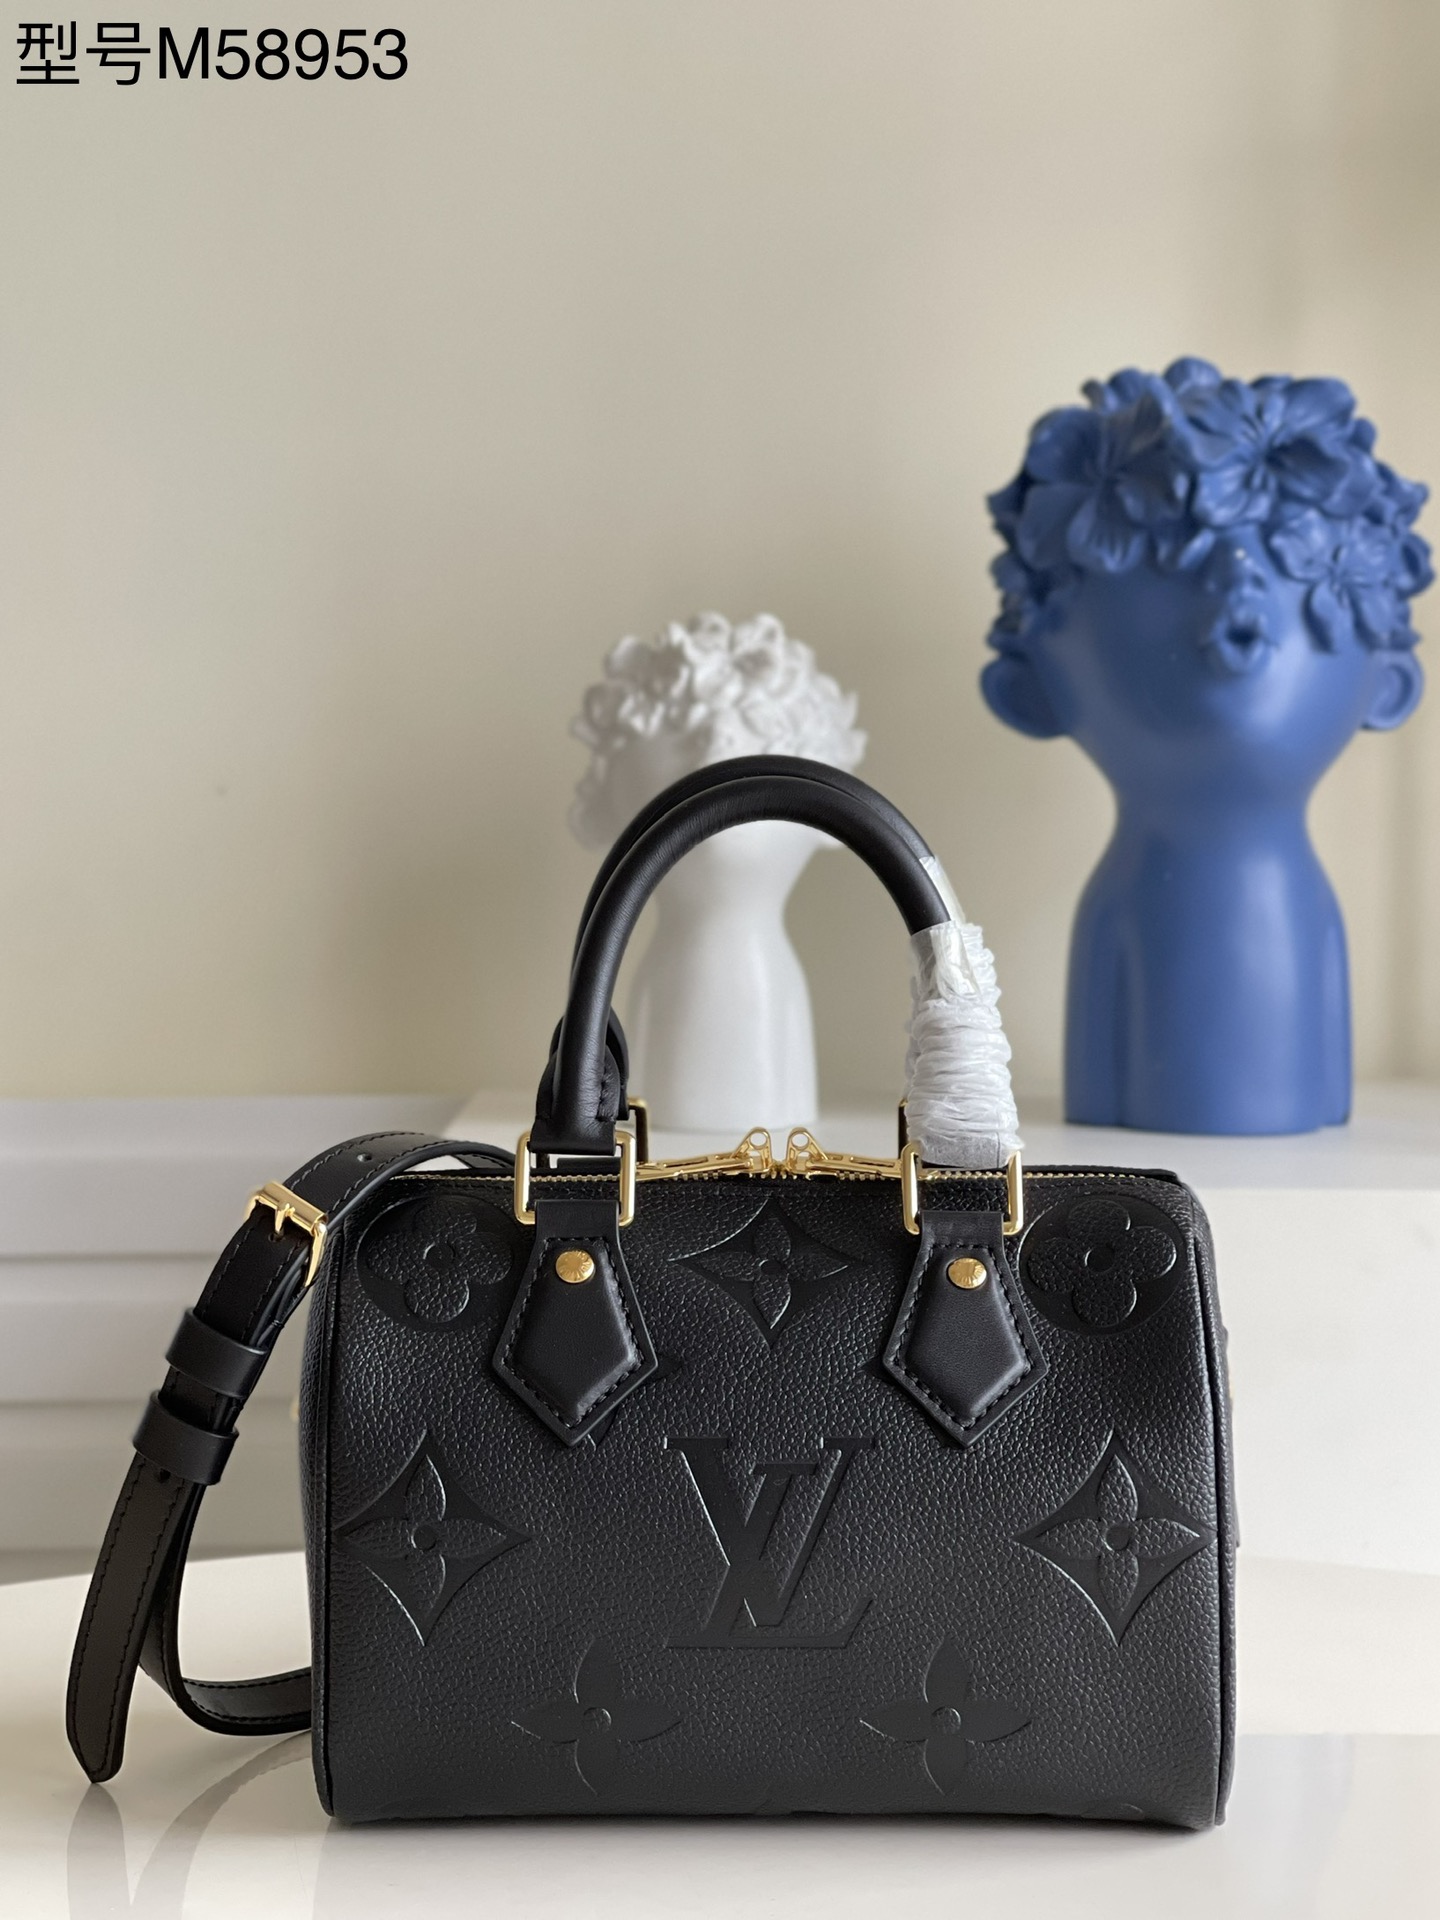 Louis Vuitton® Speedy Bandoulière 20 Black. Size